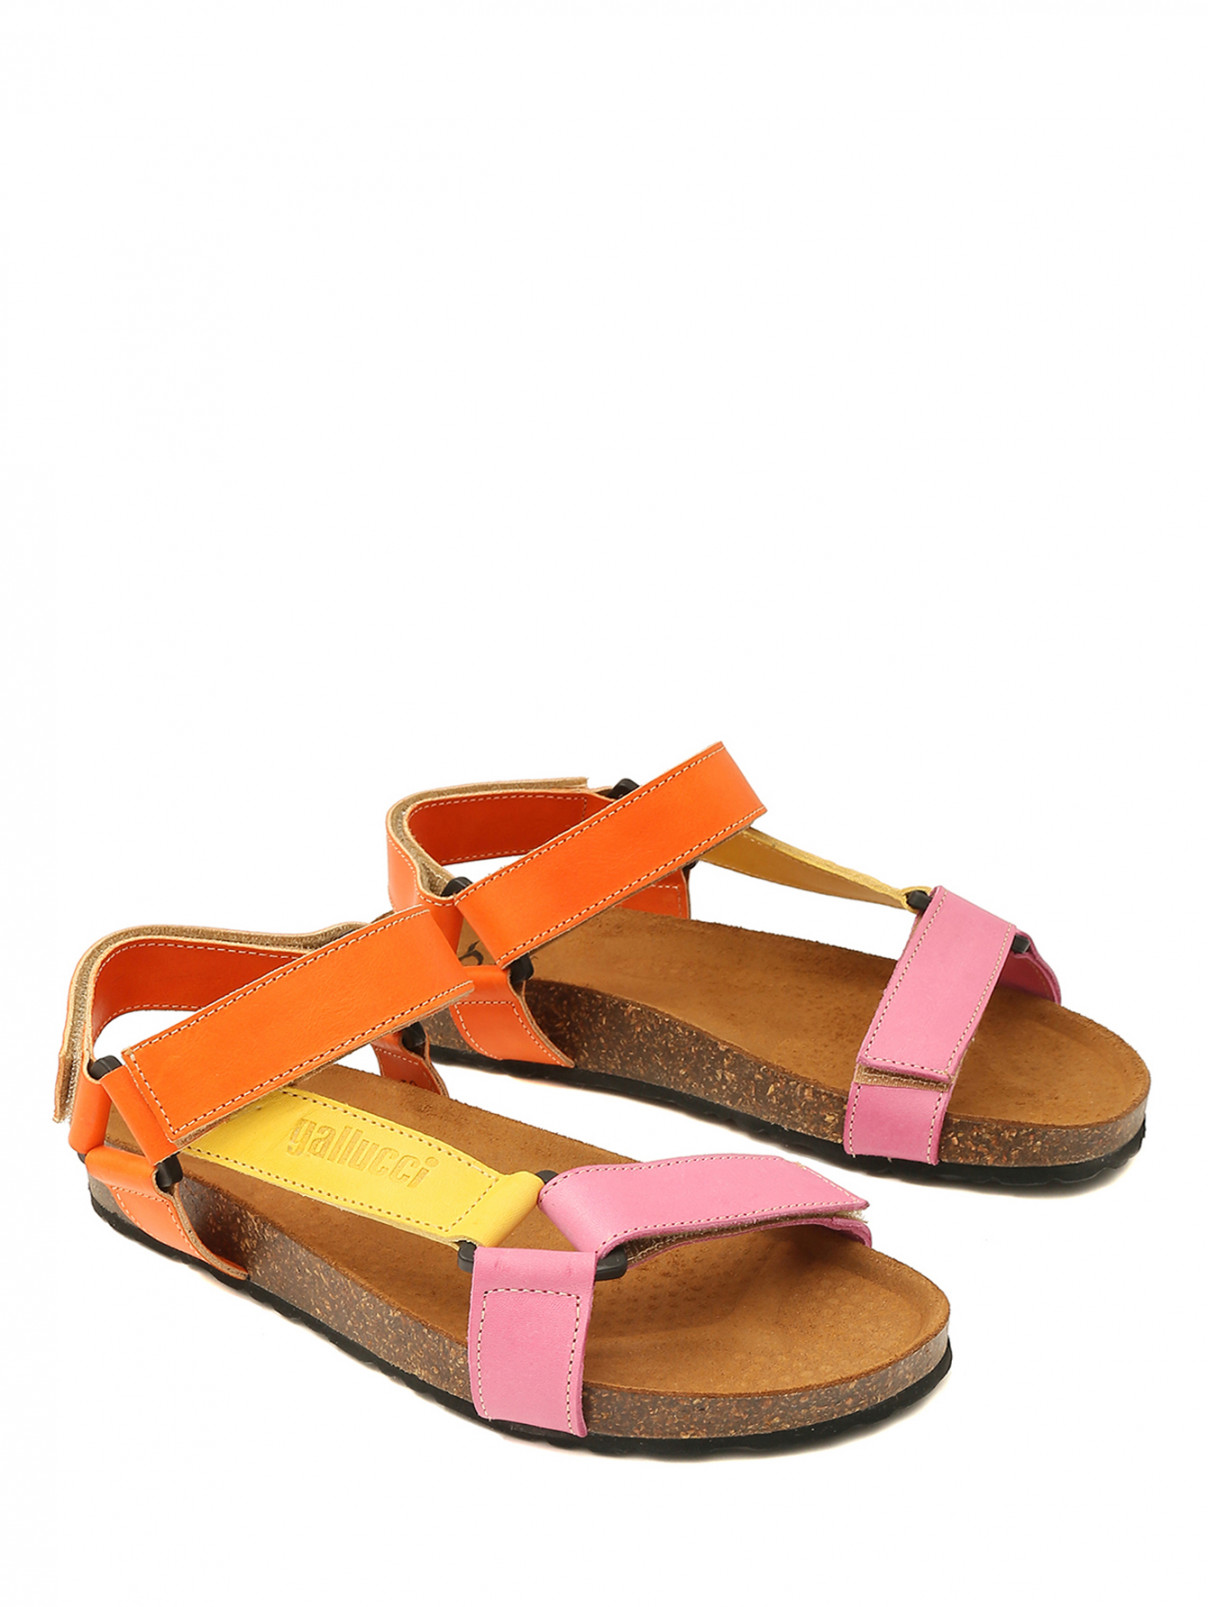 Кожаные сандалии на липучке Gallucci  –  Общий вид  – Цвет:  Оранжевый